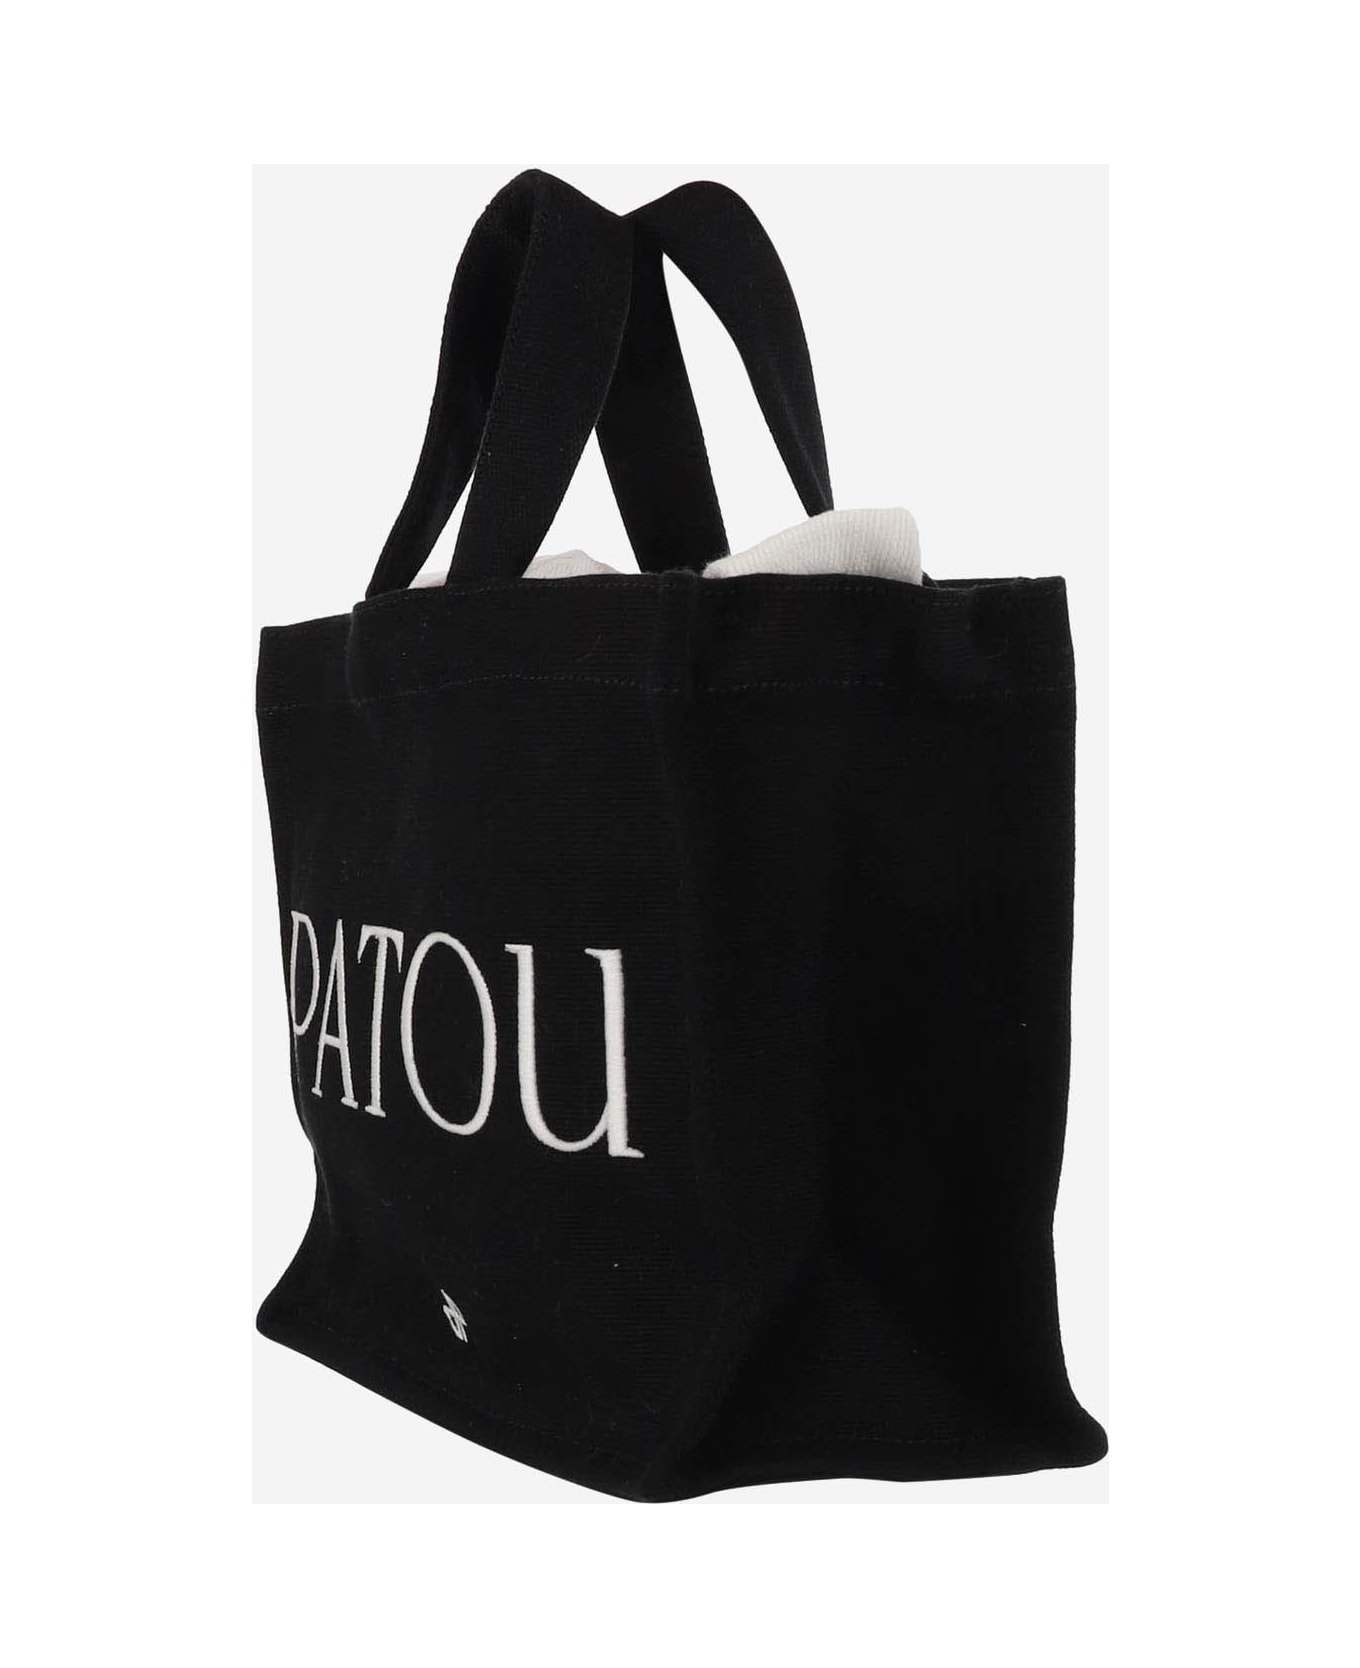 Patou Cotton Tote Bag - Black